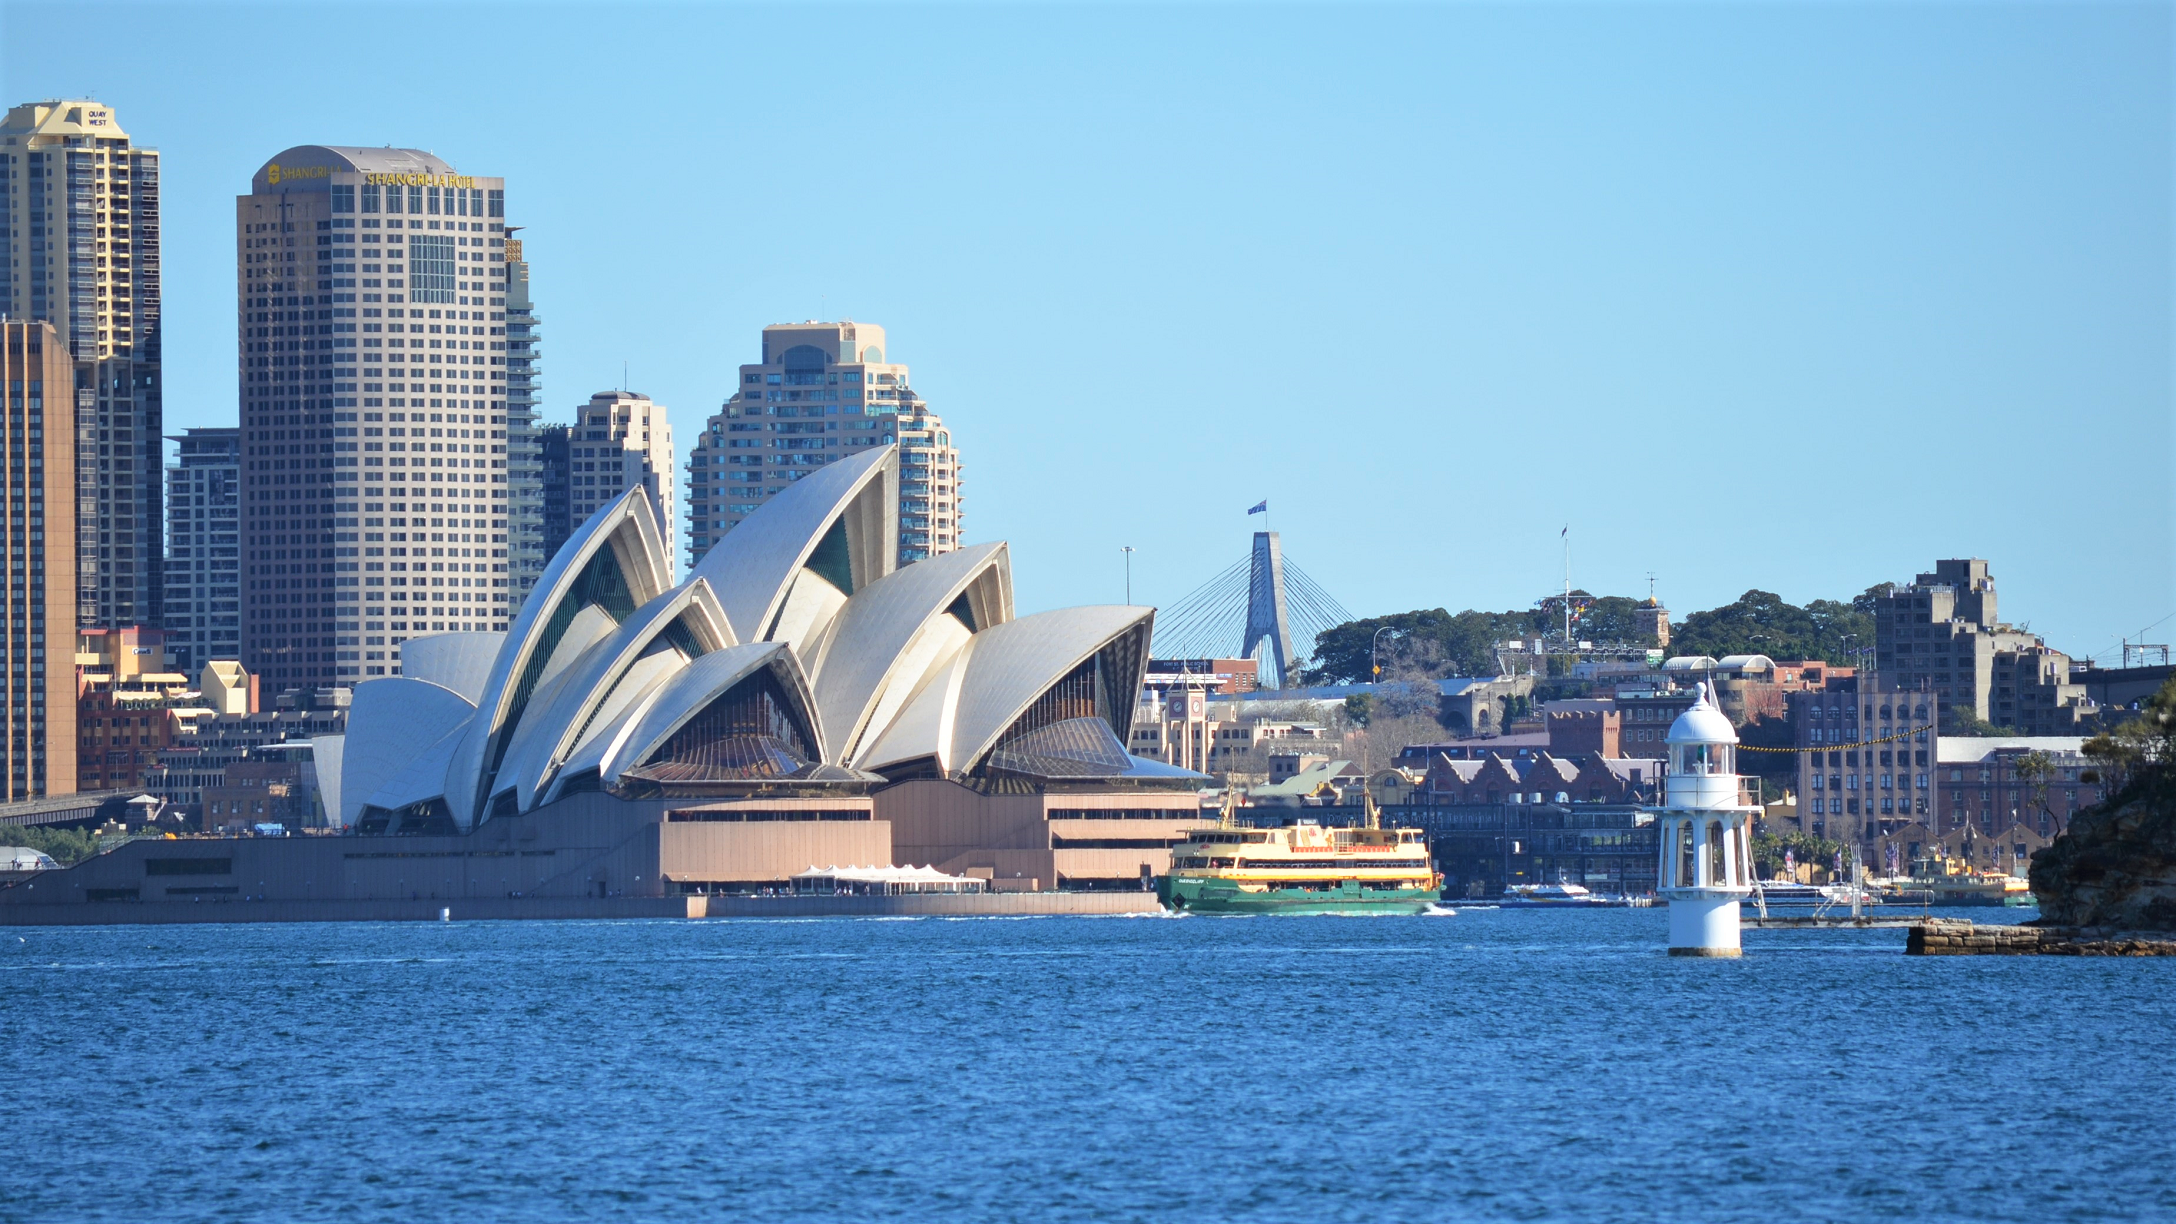 City of Sydney, Australia by lonewolf6738